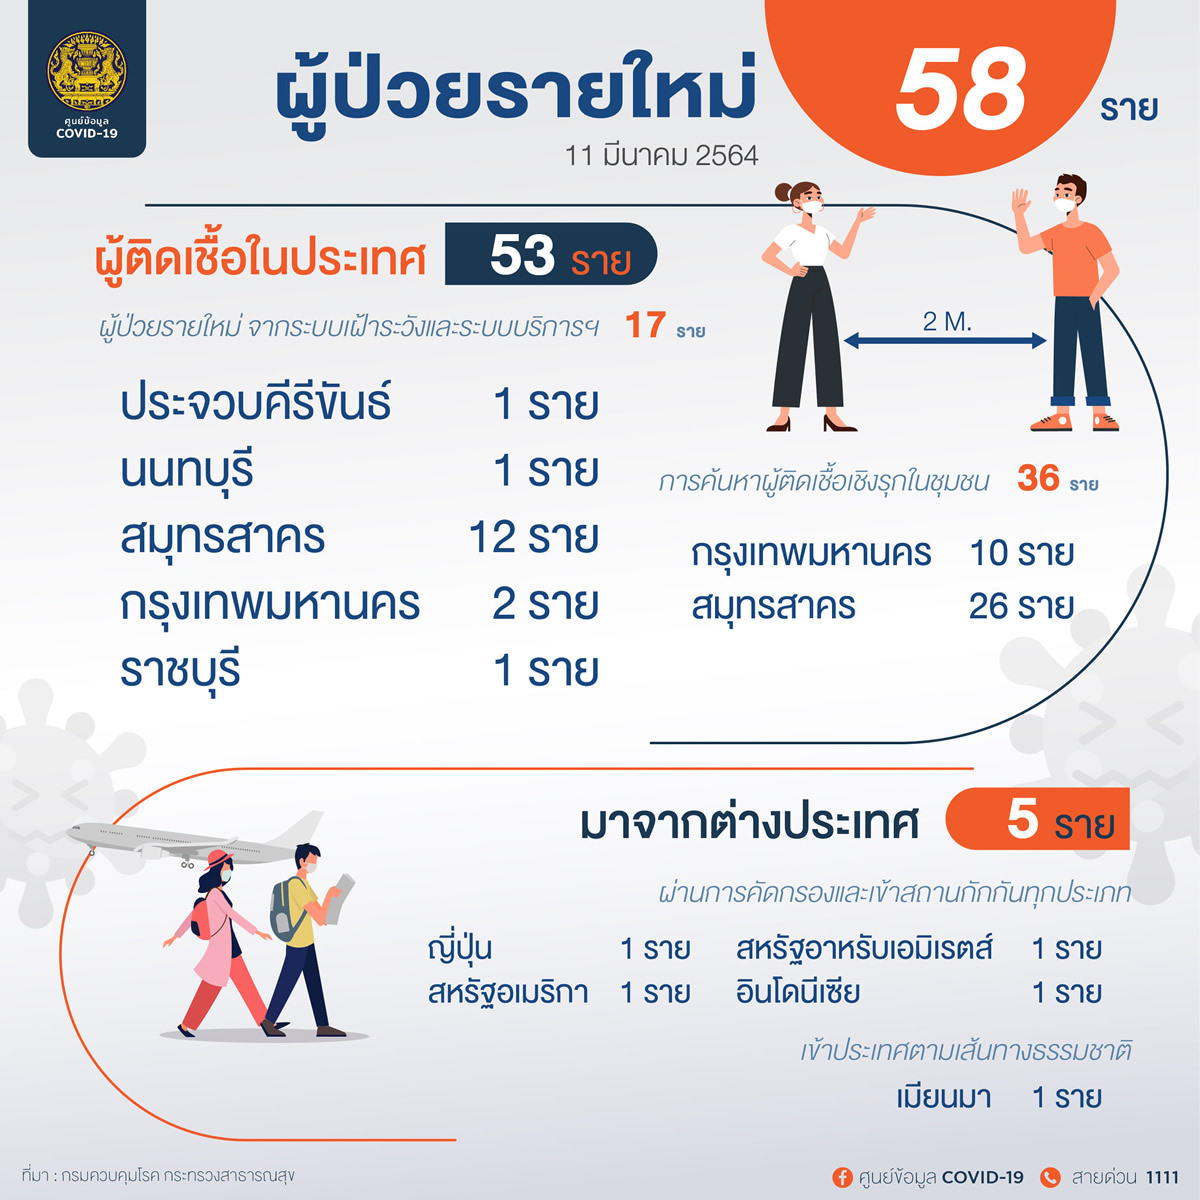 新規タイ国内感染53人、バンコク都では12人の陽性を確認［2021年3月11日発表］